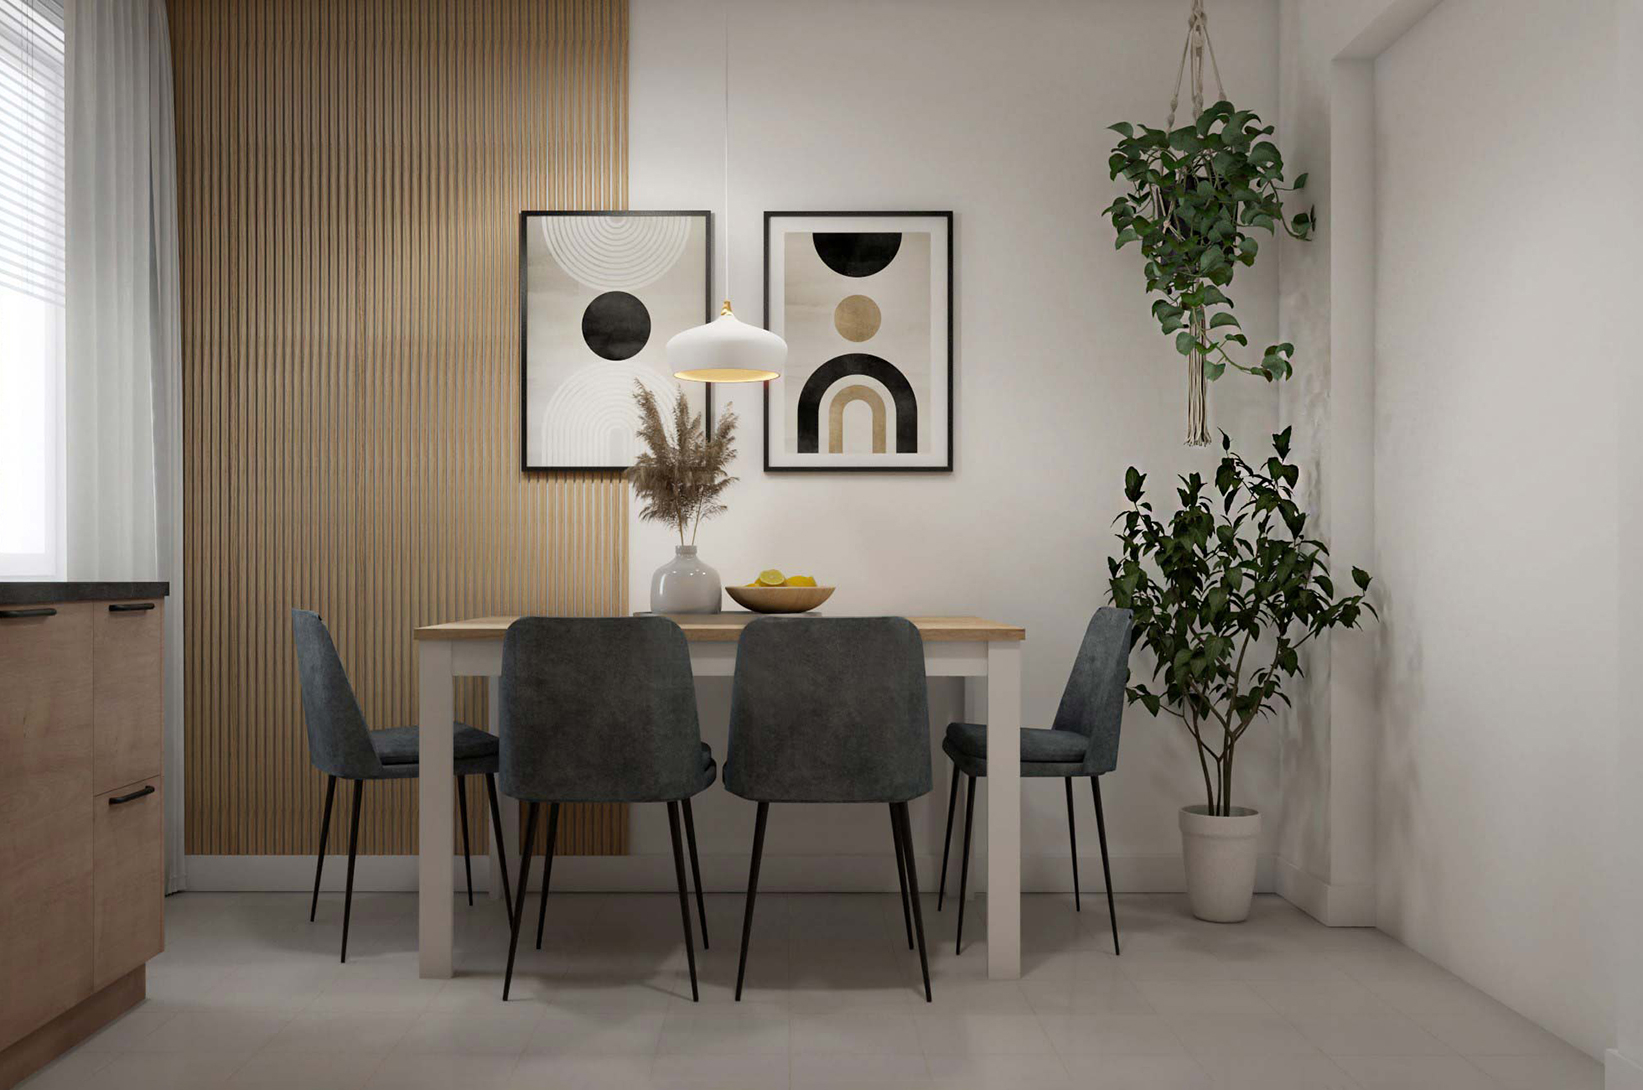 Stół w kuchni przy ścianie: miejsce spożywania posiłków, podręczny organizer, a może kącik kawowy?